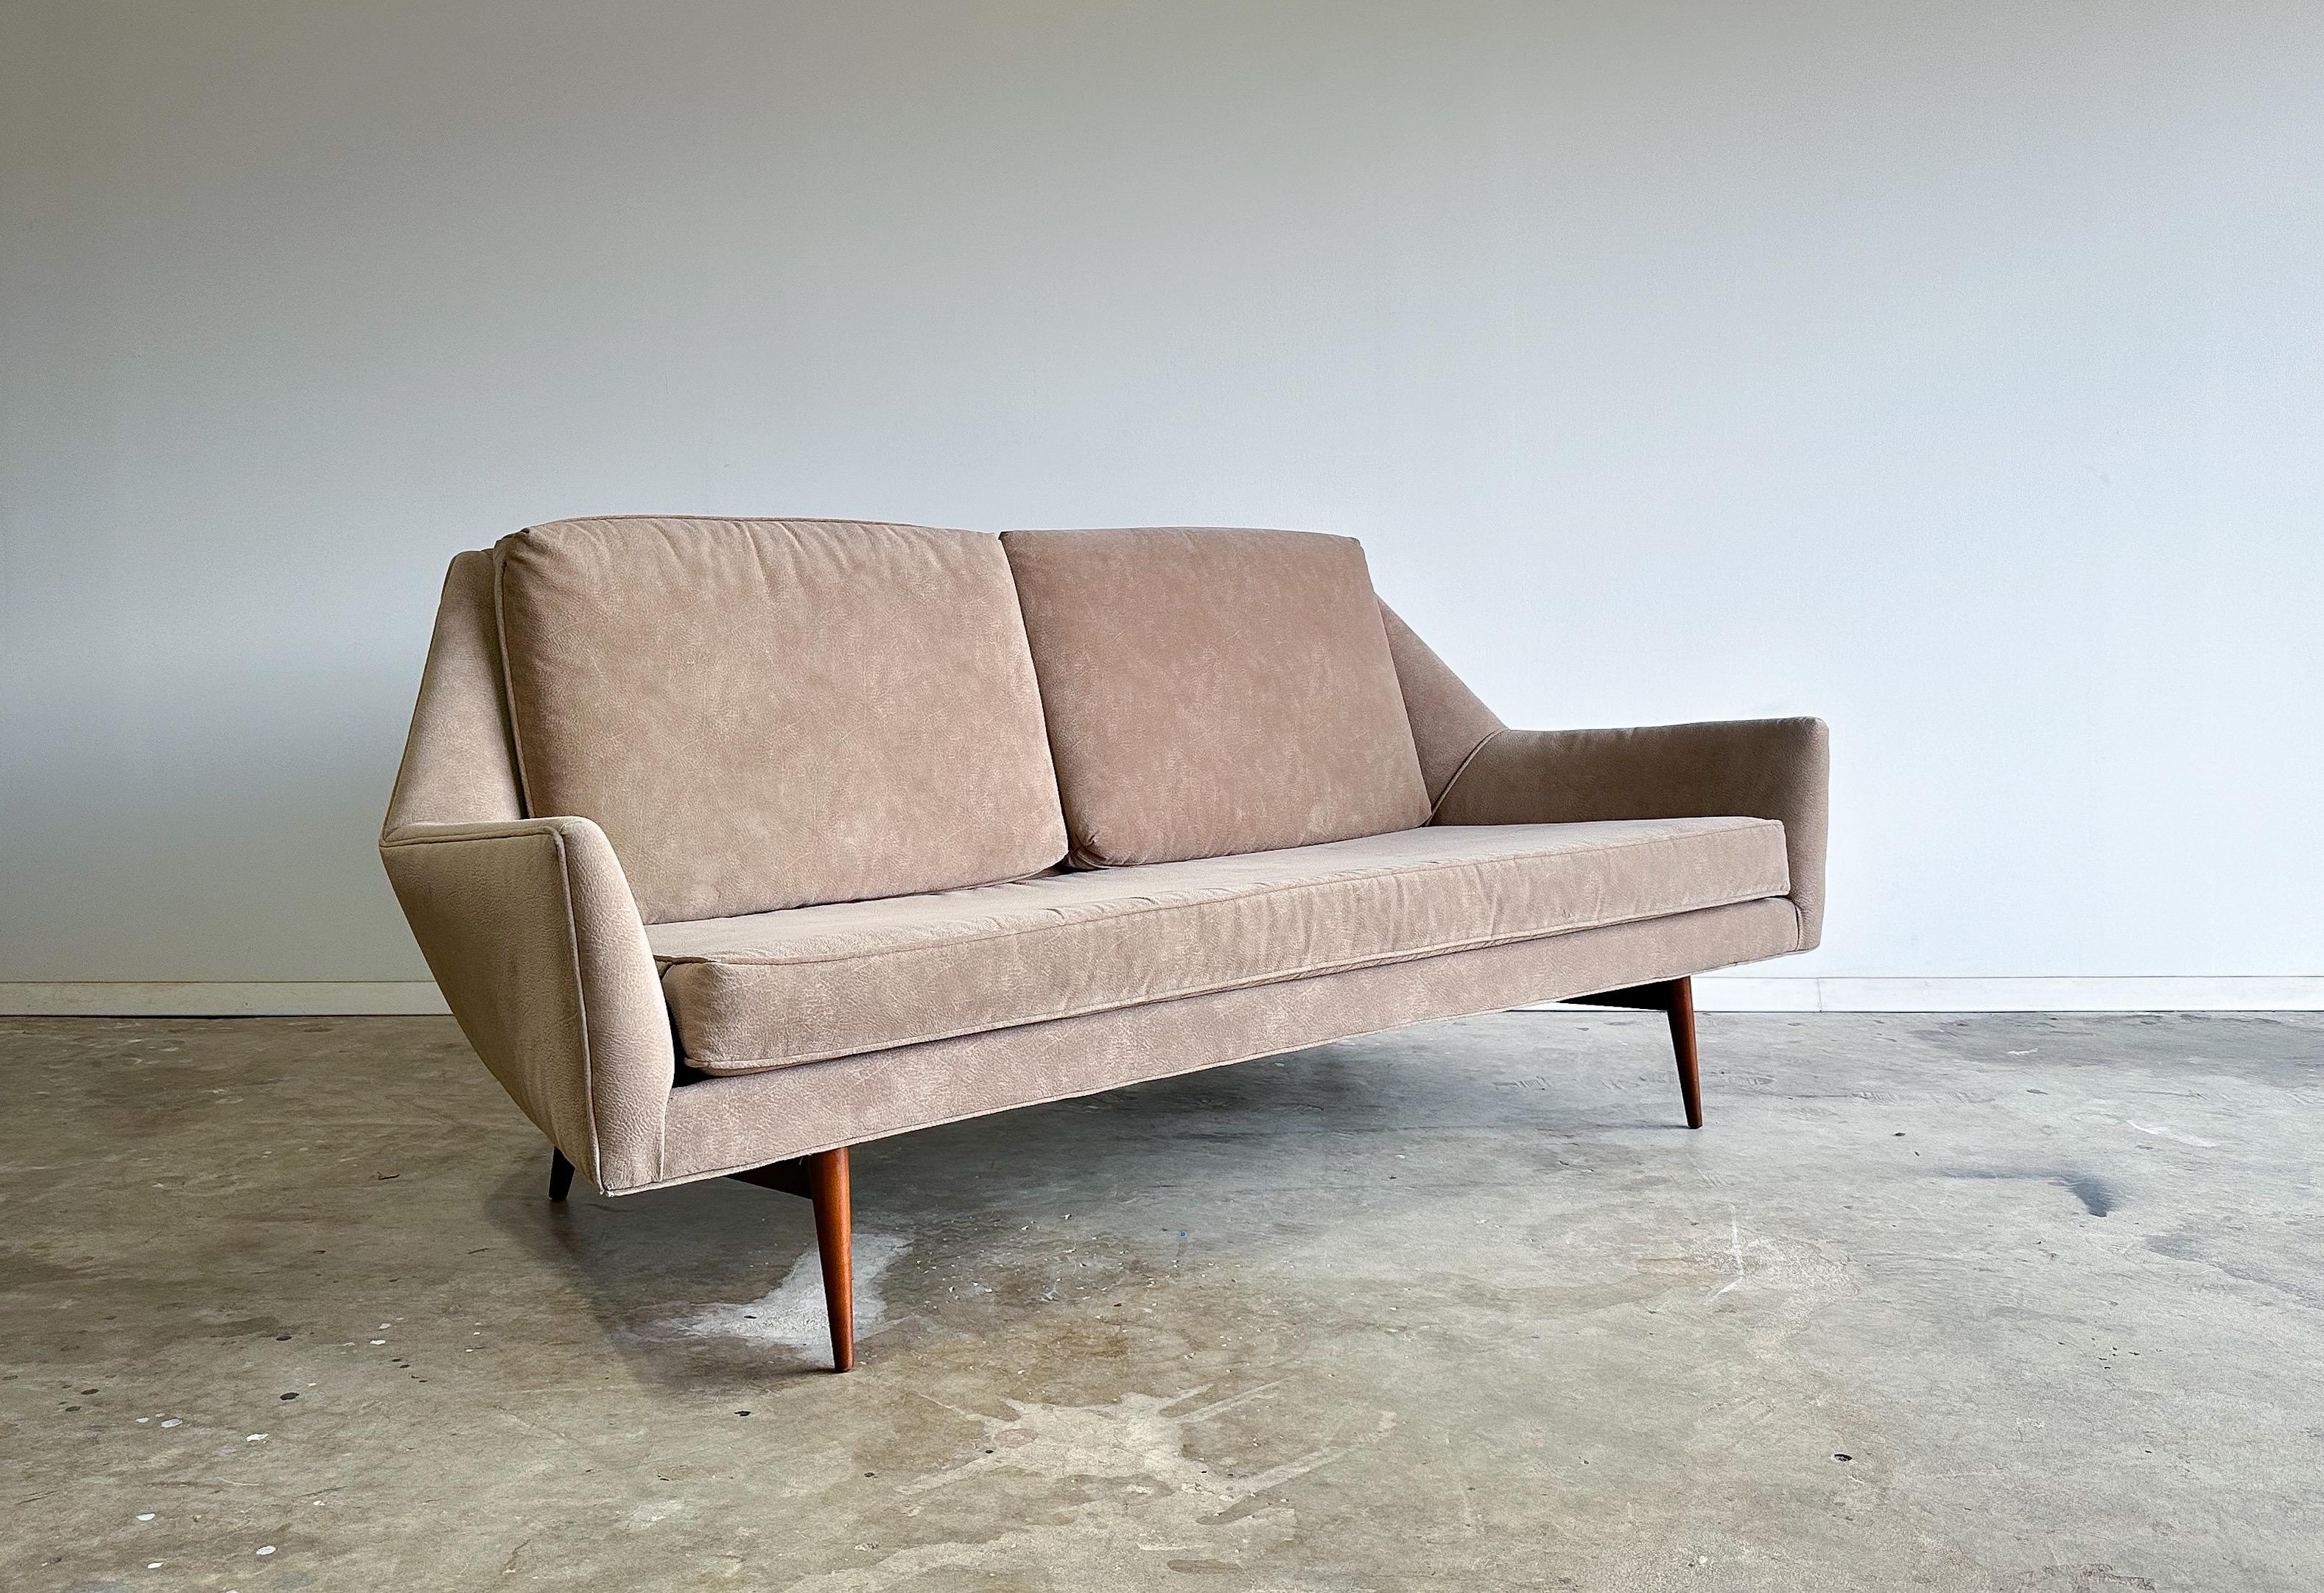 Ein seltenes Sofa, Modell 3147, entworfen von Paul McCobb für Directional und hergestellt von Custom Craft Inc. Ähnlich wie einige der anderen 